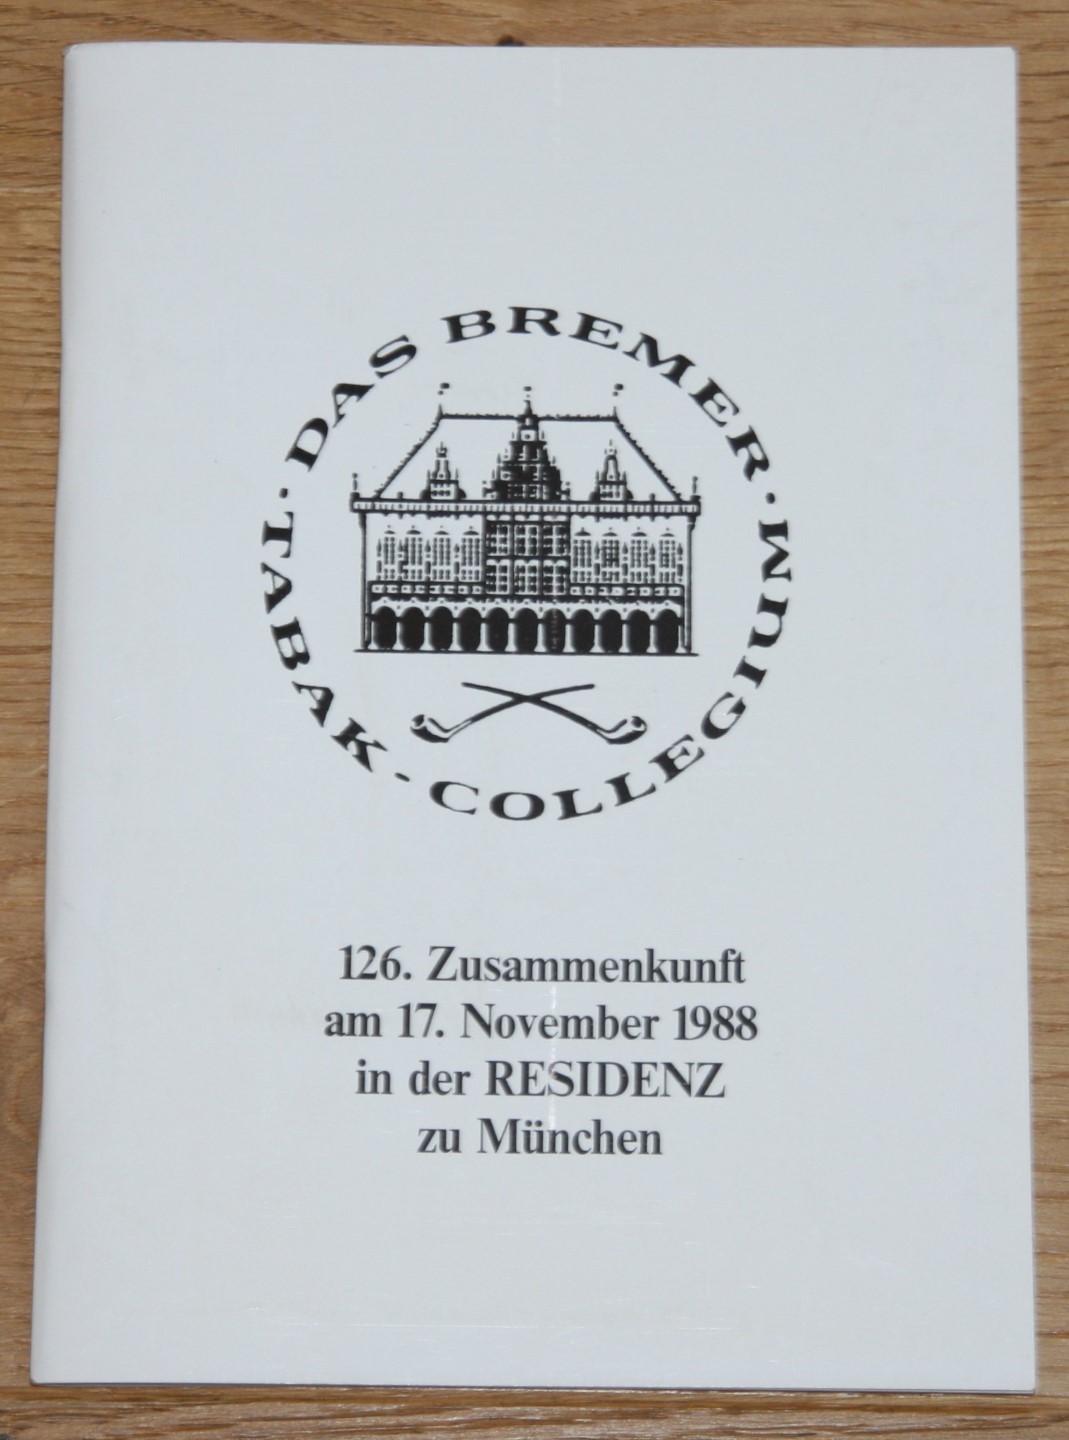 Das Bremer Tabak-Kollegium. 126. Zusammenkunft am 17. November 1988 in der RESIDENZ zu München.